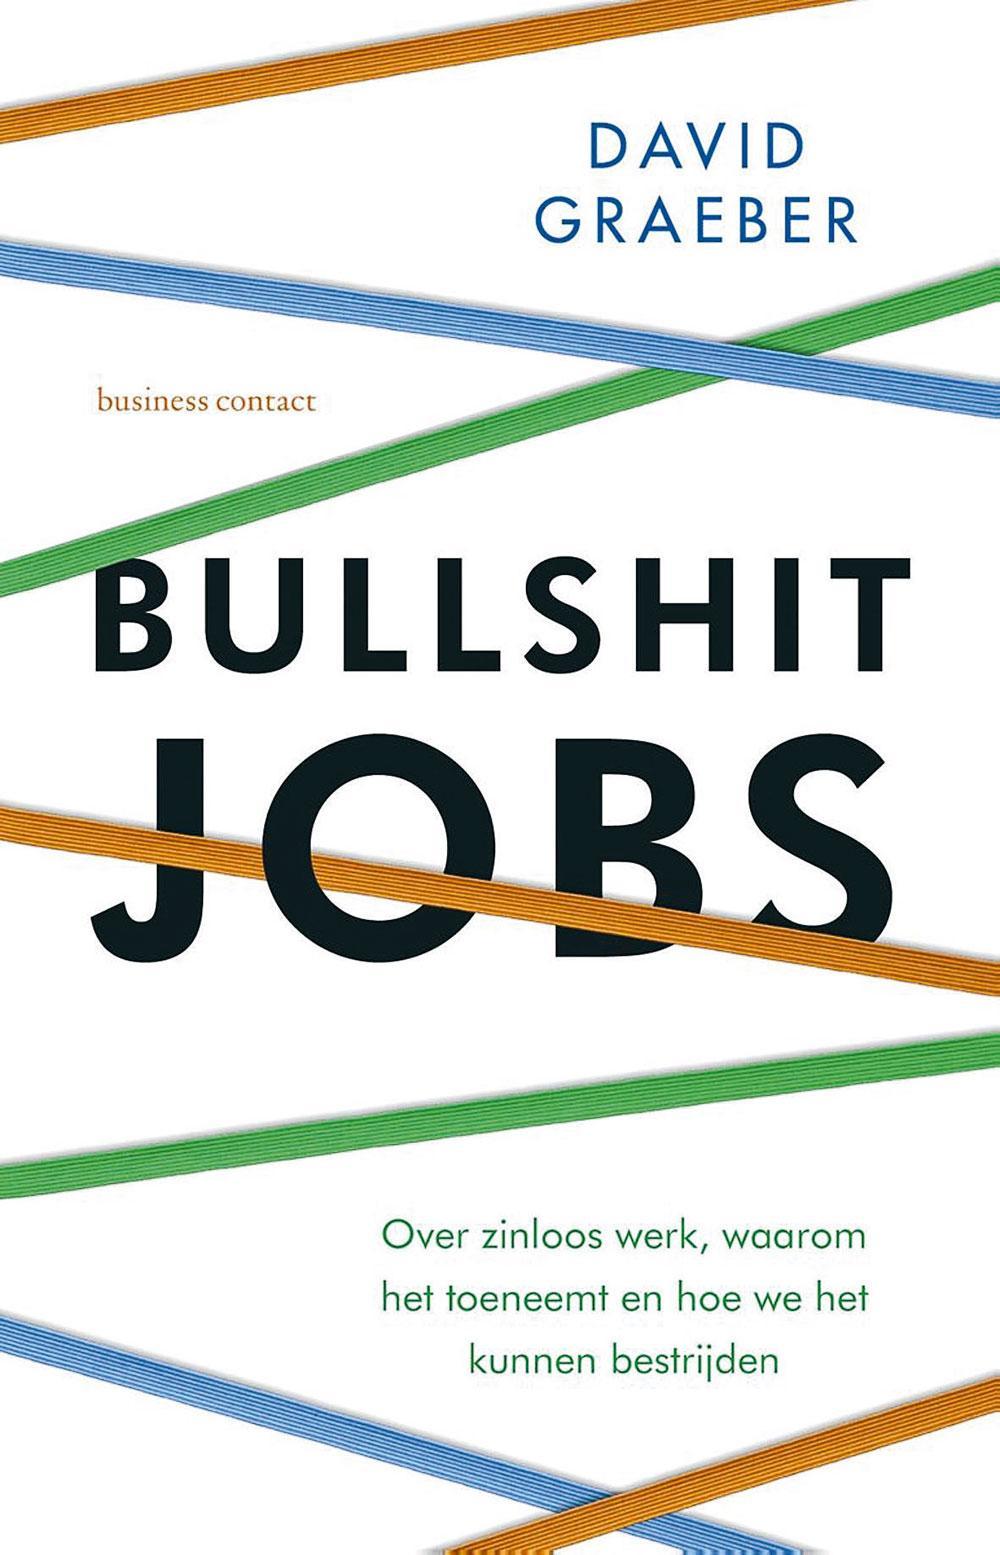 David Graeber, Bullshit Jobs: over zinloos werk, waarom het toeneemt en hoe we het kunnen bestrijden, Business Contact, 416 blz., 24,99 euro.